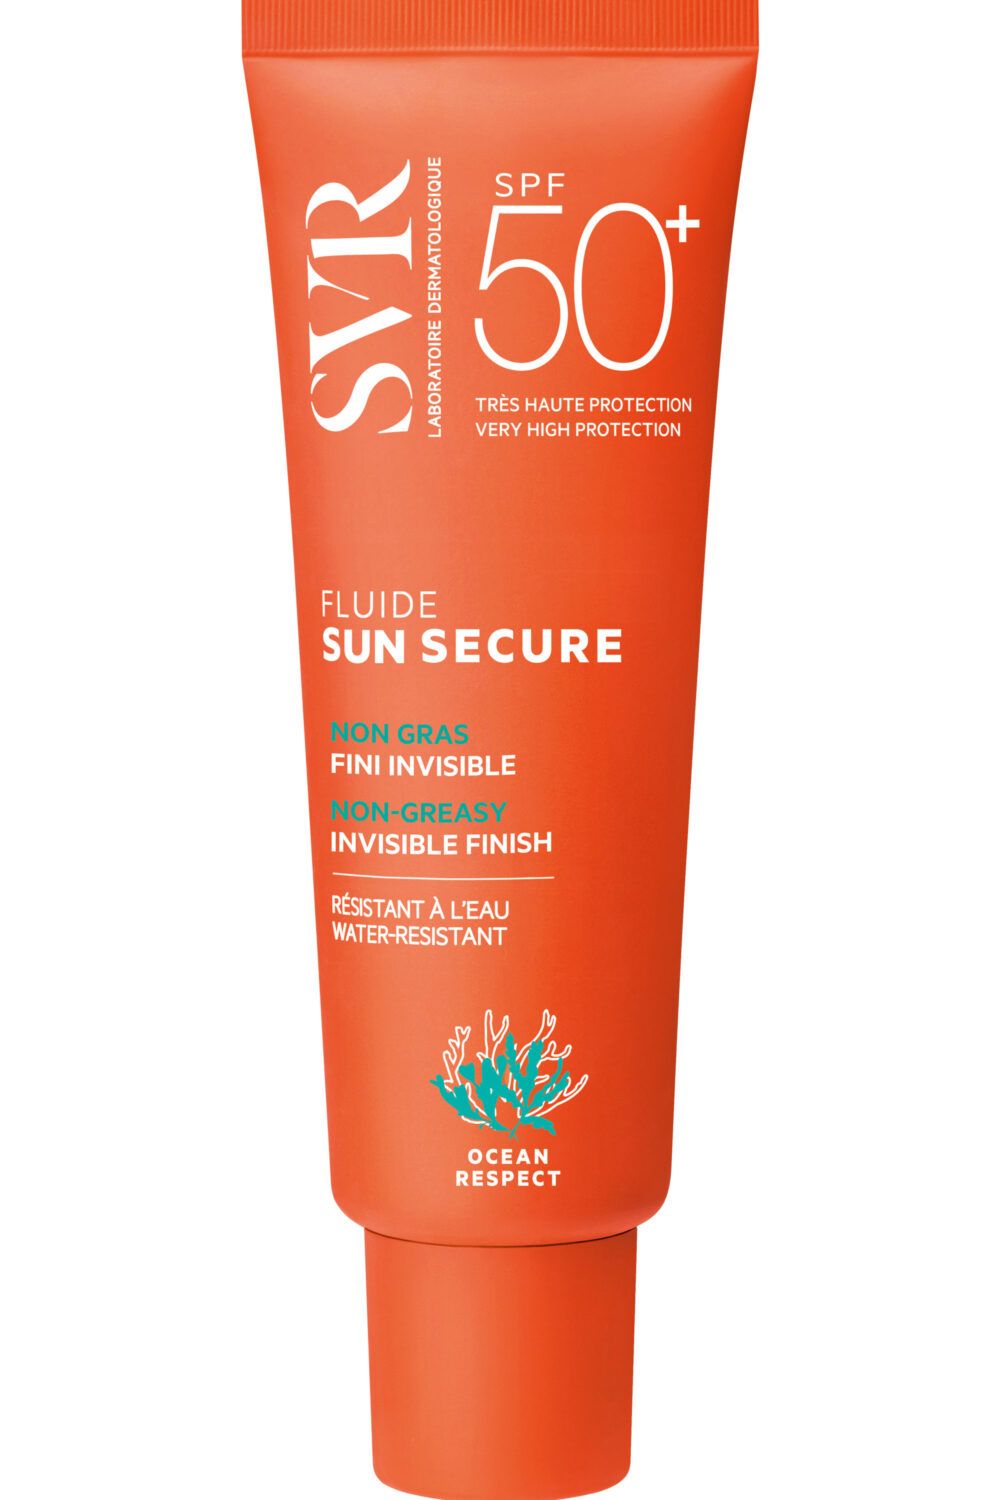 SVR - Fluide non gras fini invisible SPF50+ Sun Secure